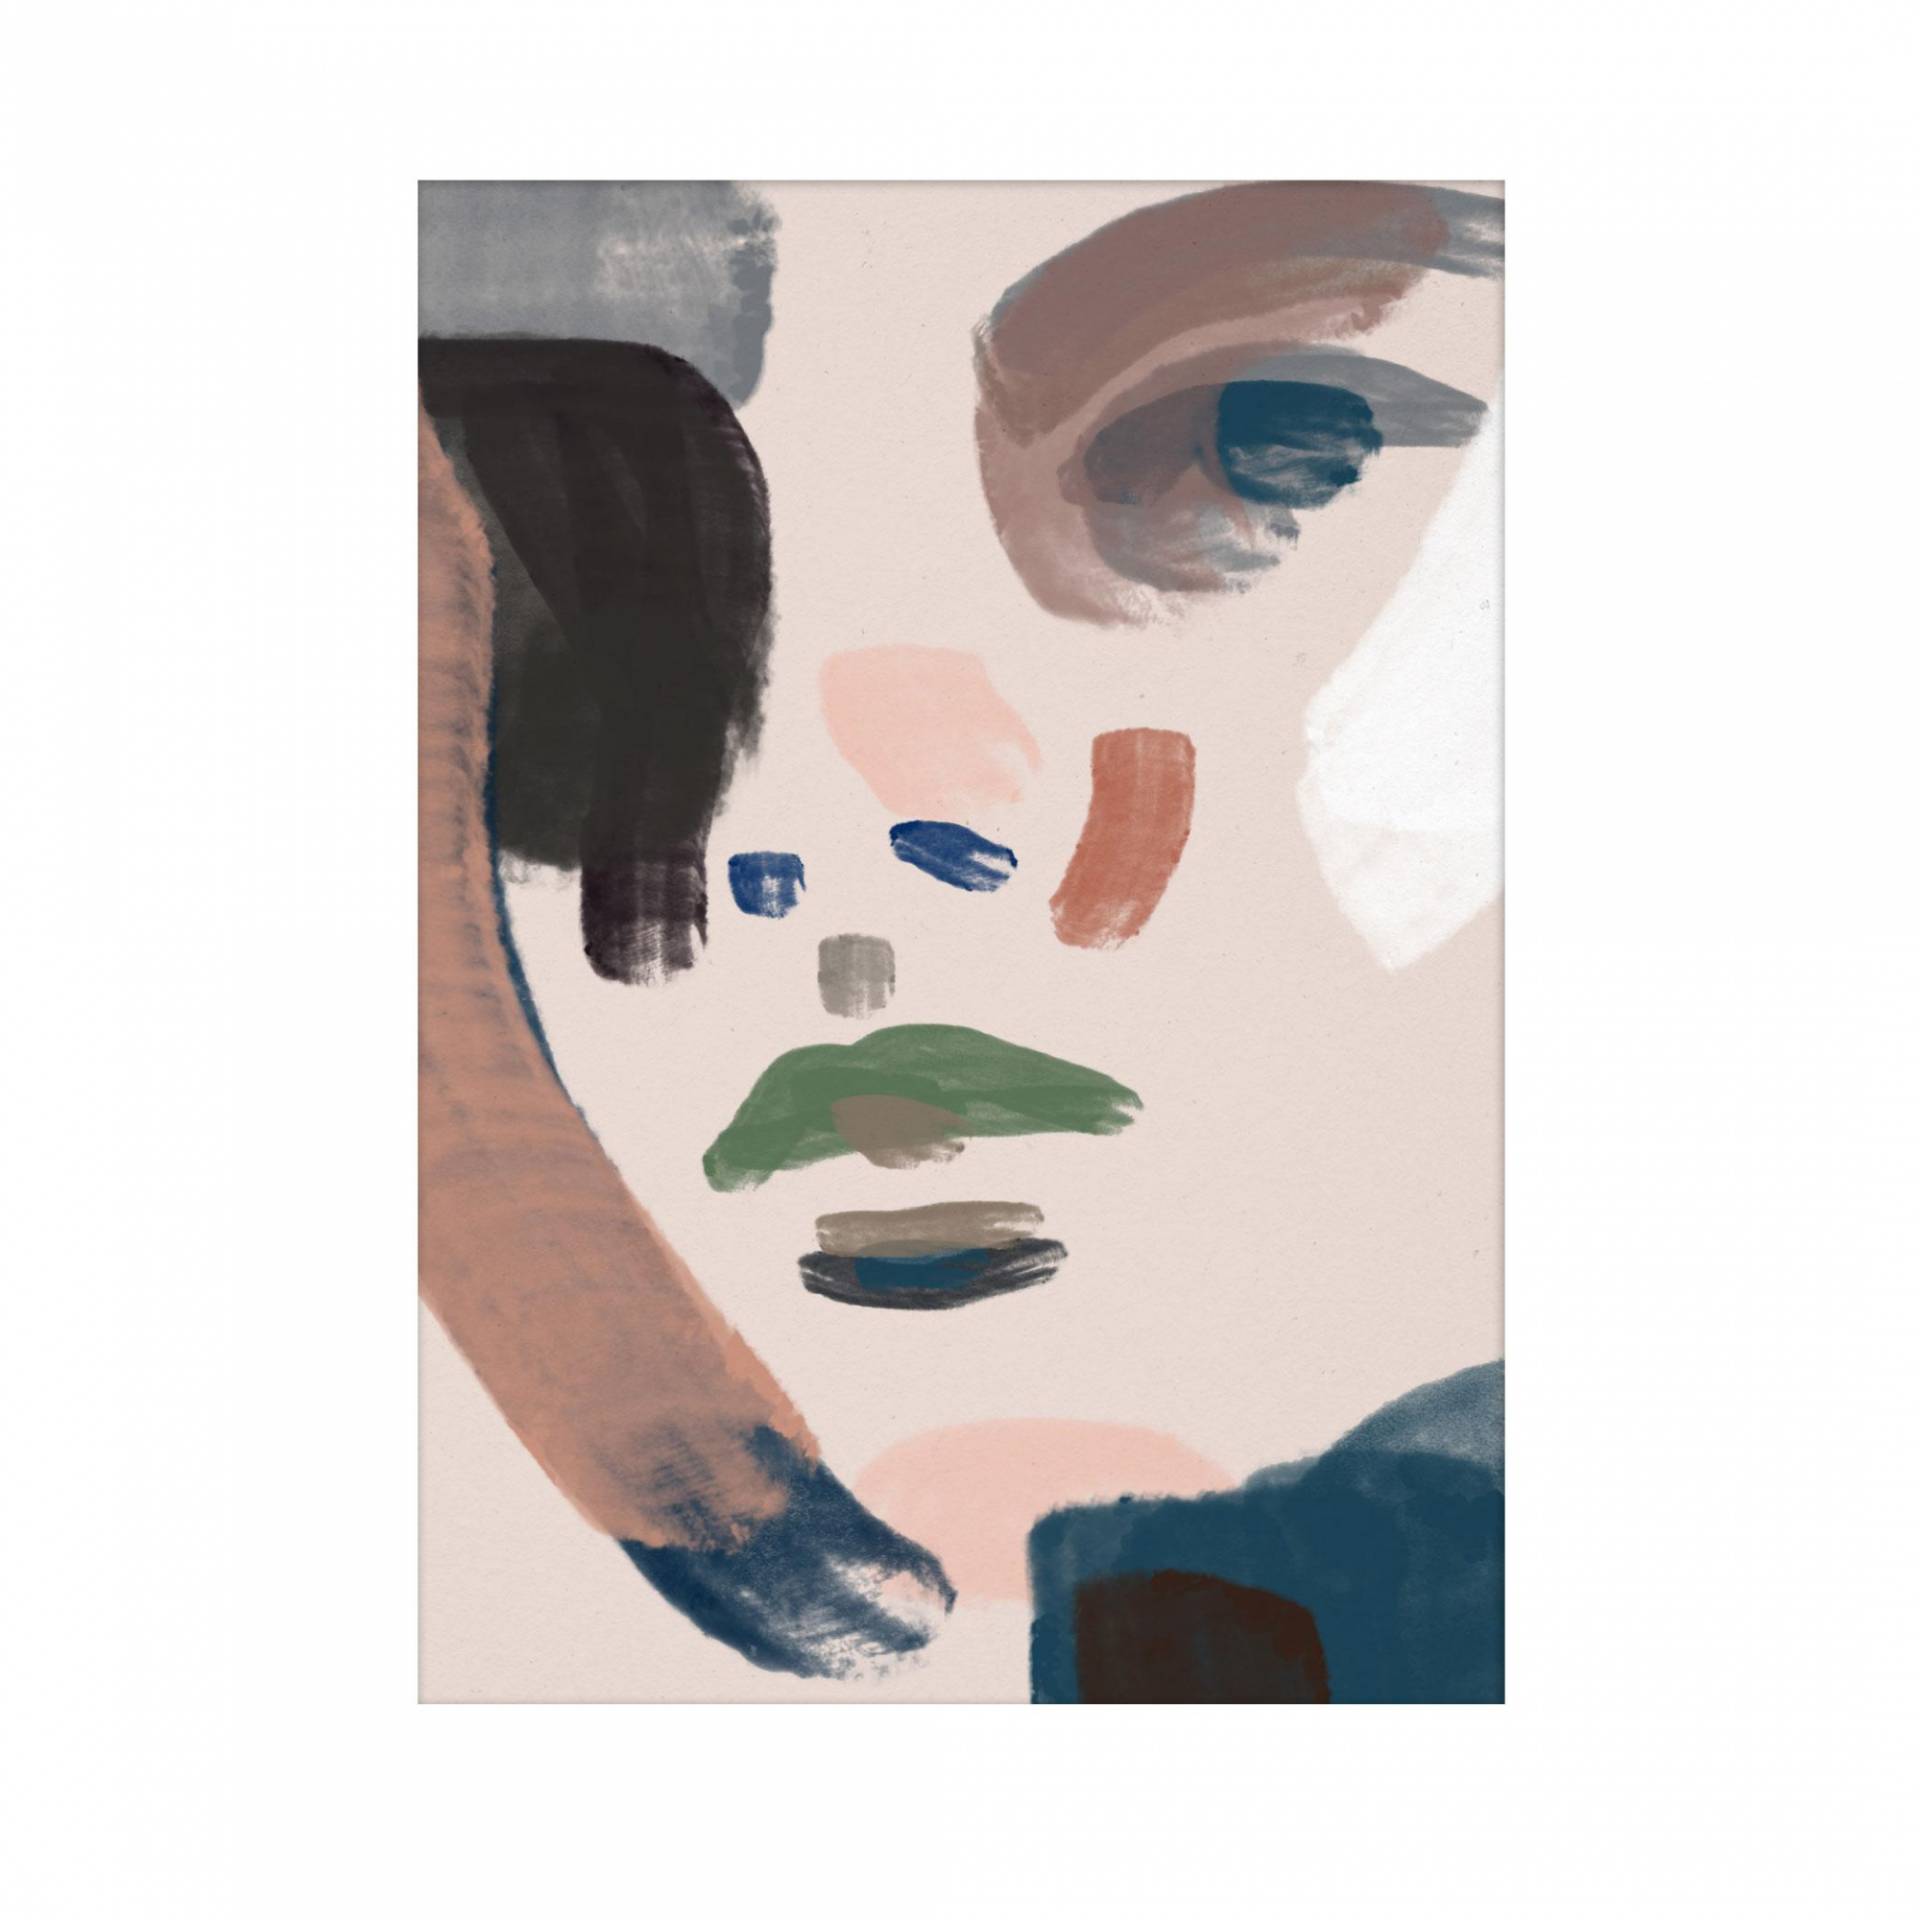 Paper Collective - Her Kunstdruck 30x40cm - beige, schwarz, blau, grün/BxH 30x40cm von Paper Collective